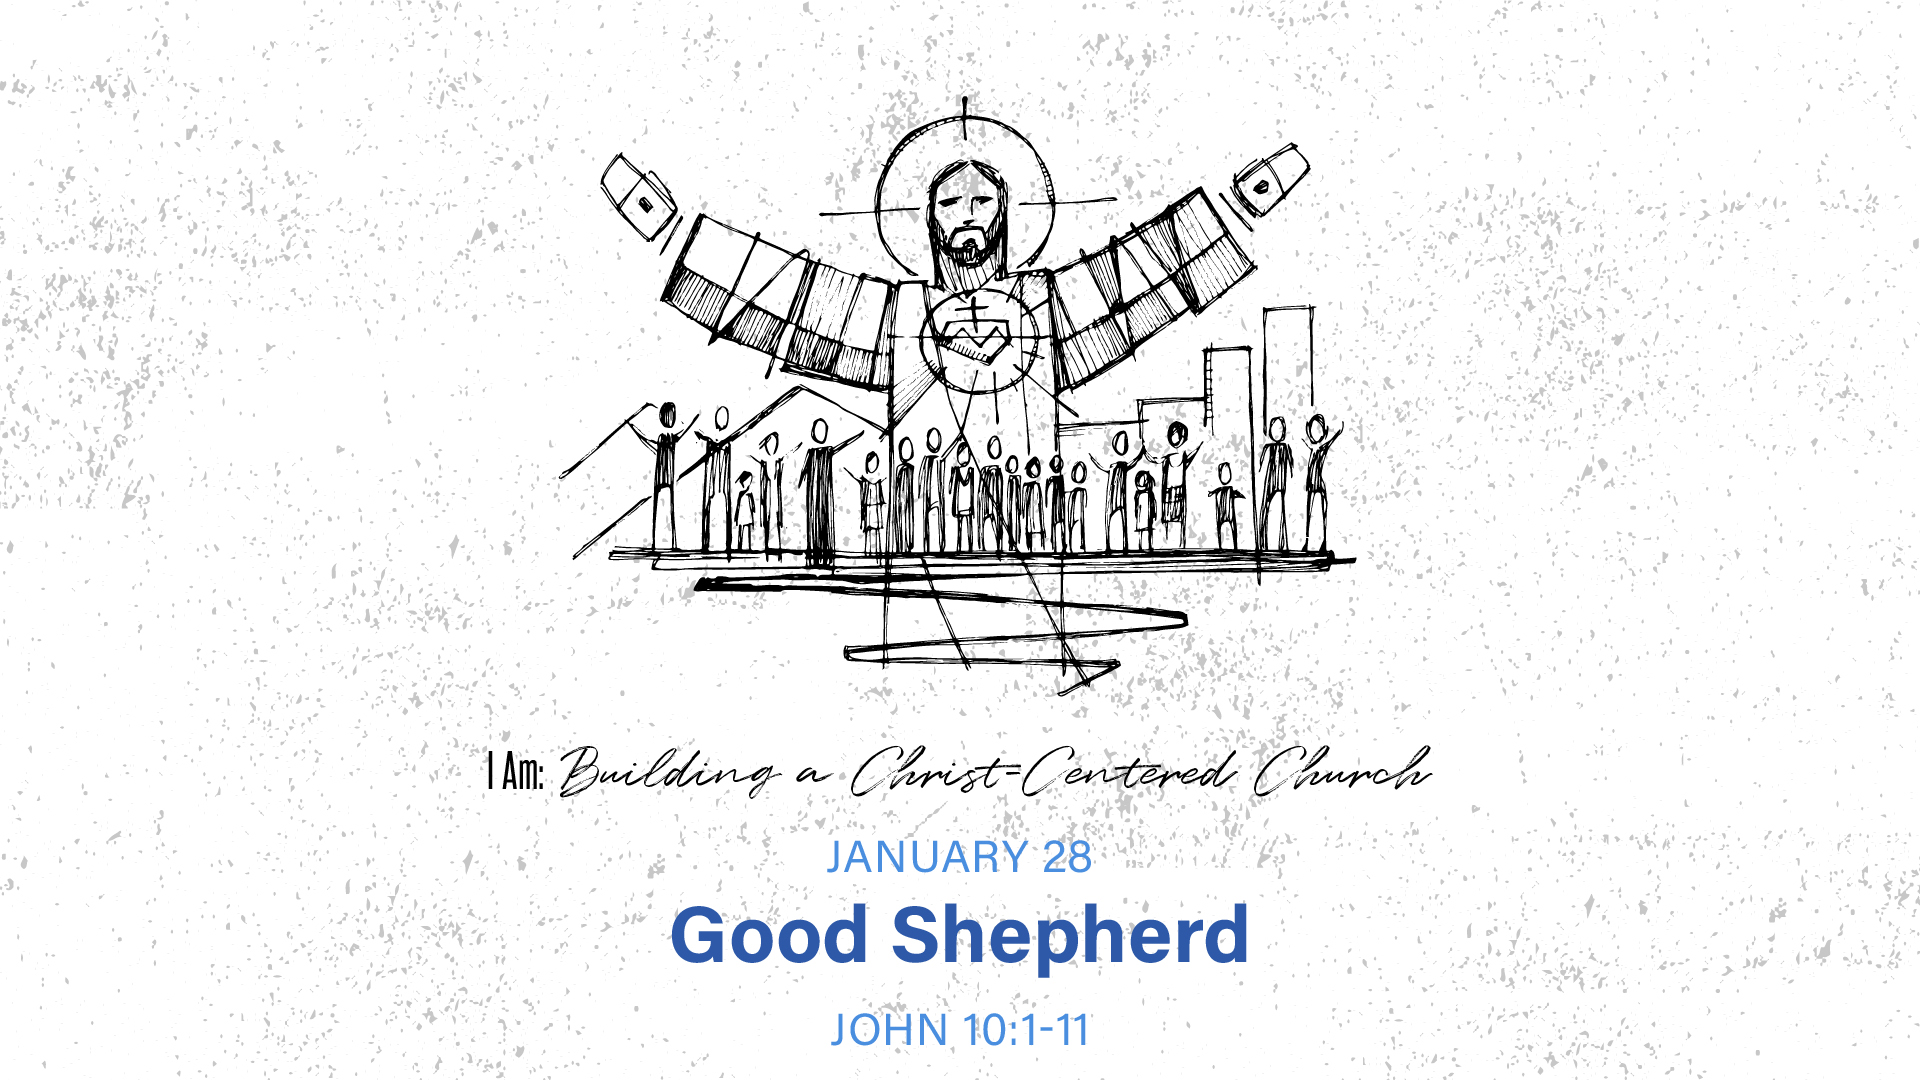 I Am: Building a Christ-Centered Church: Good Shepherd